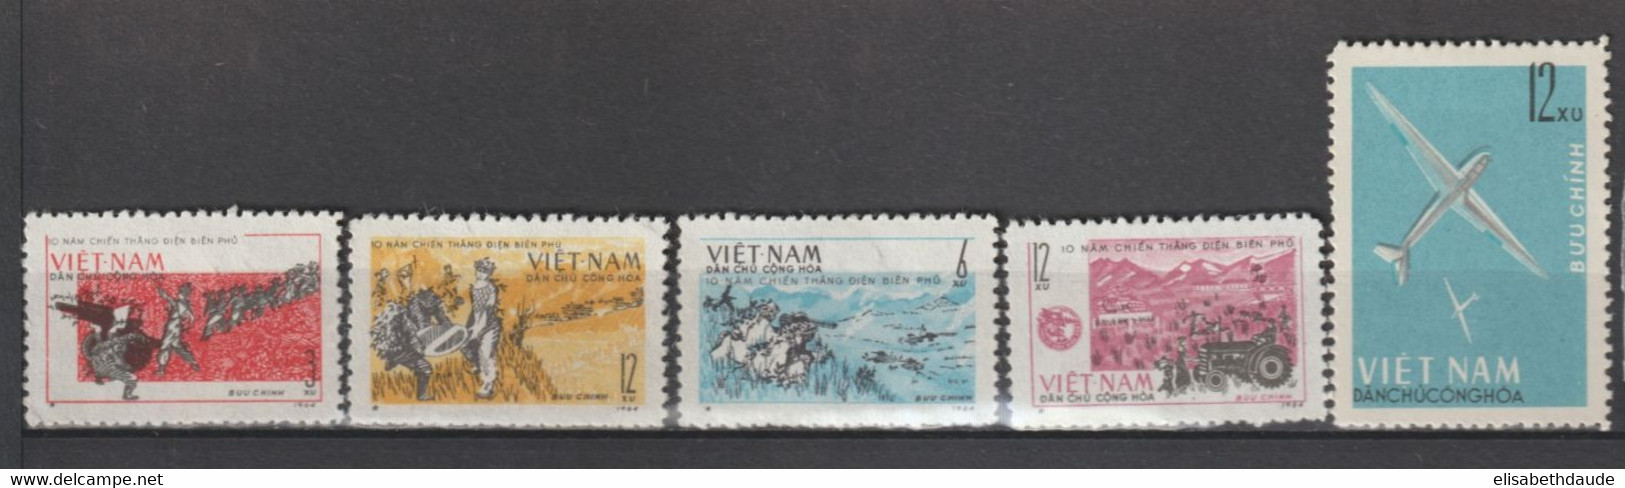 NORD VIETNAM - 1964 - ANNEE COMPLETE ! YVERT N°355/402 (SERIE FLEURS IMPERF !) NEUFS - COTE = 132 EUR - 3 PAGES - Viêt-Nam